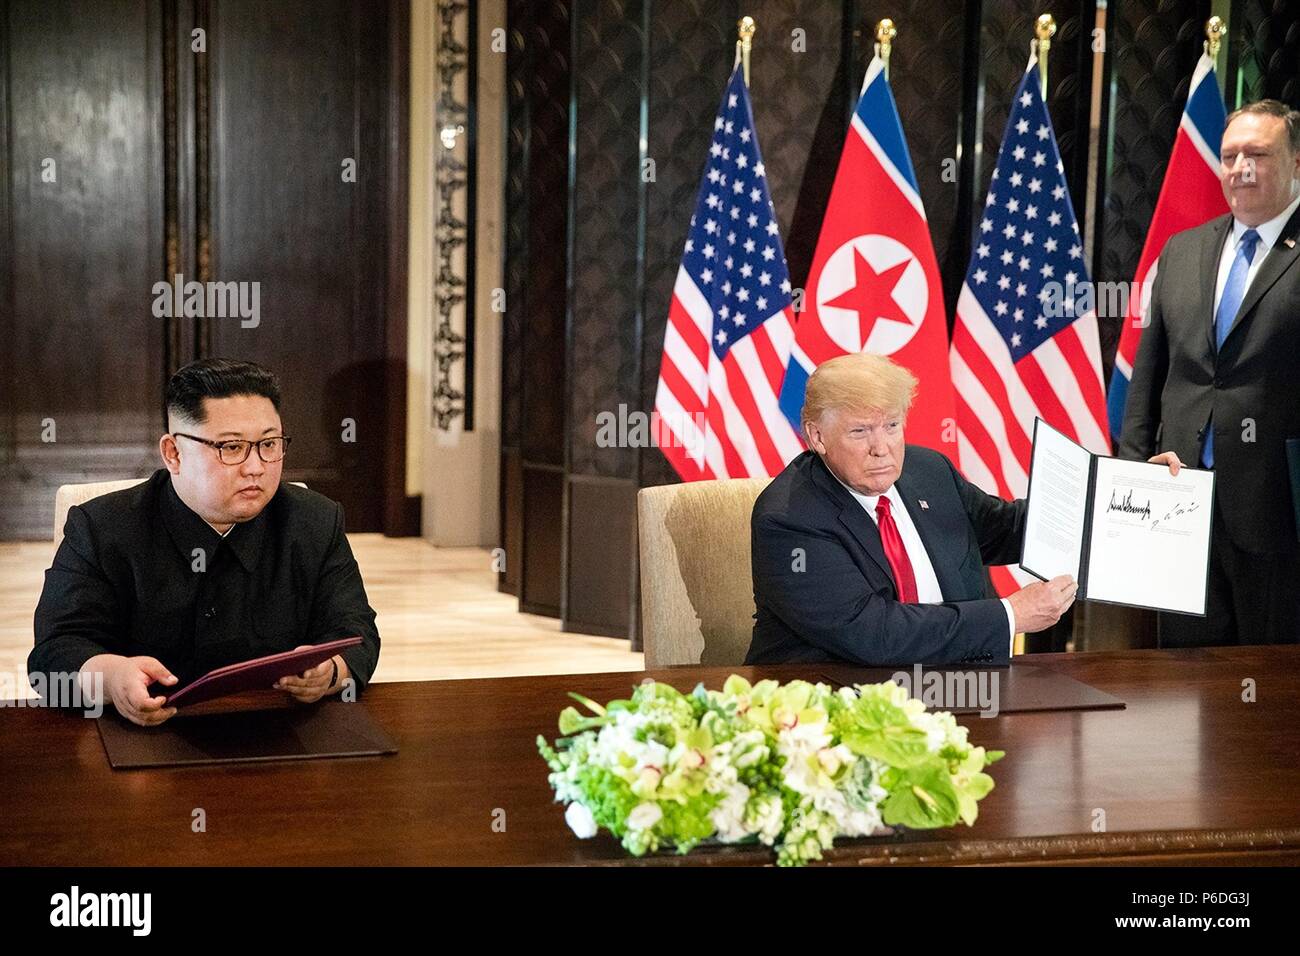 Us-Präsident Donald Trump, rechts, hält die unterzeichnete Vereinbarung als nordkoreanischen Führer Kim Jong Un an während einer Zeremonie an der Capella resort Juni 12, 2018 in Insel Sentosa, Singapur aussieht. Stockfoto